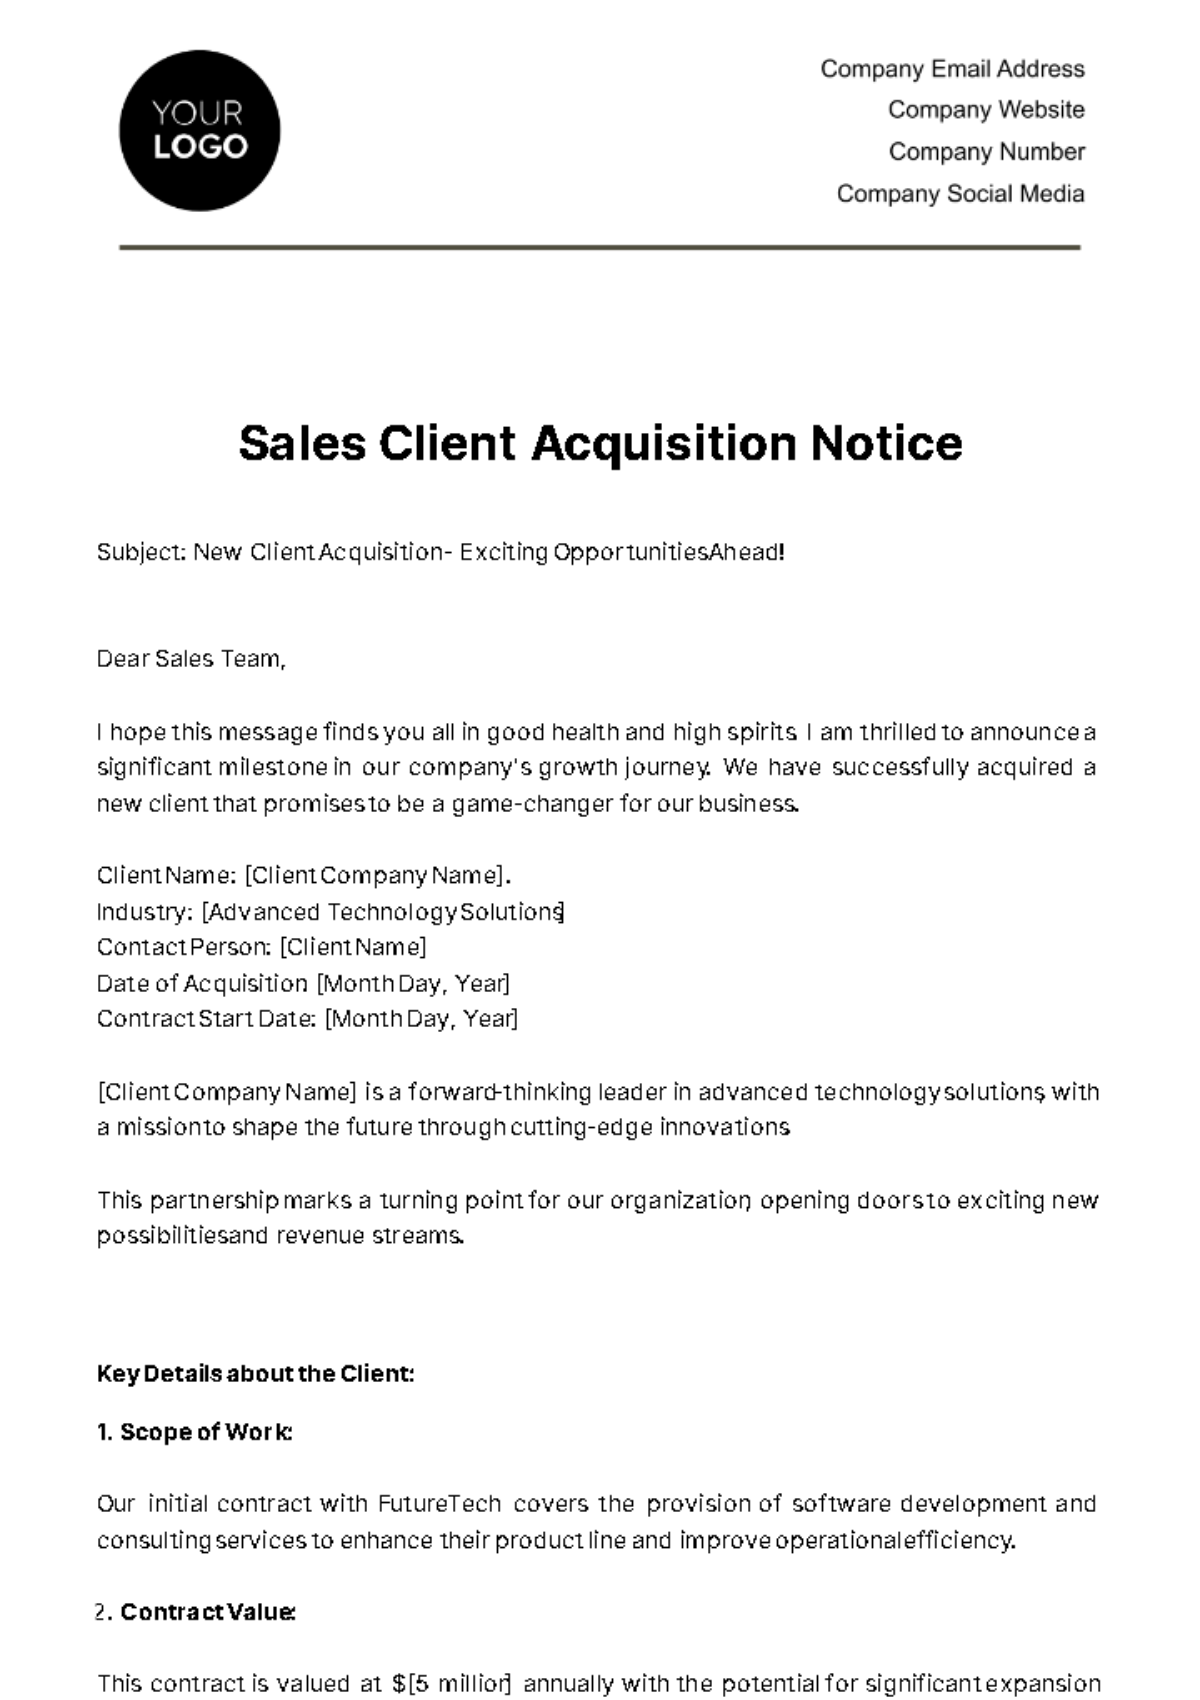 Sales Client Acquisition Notice Template